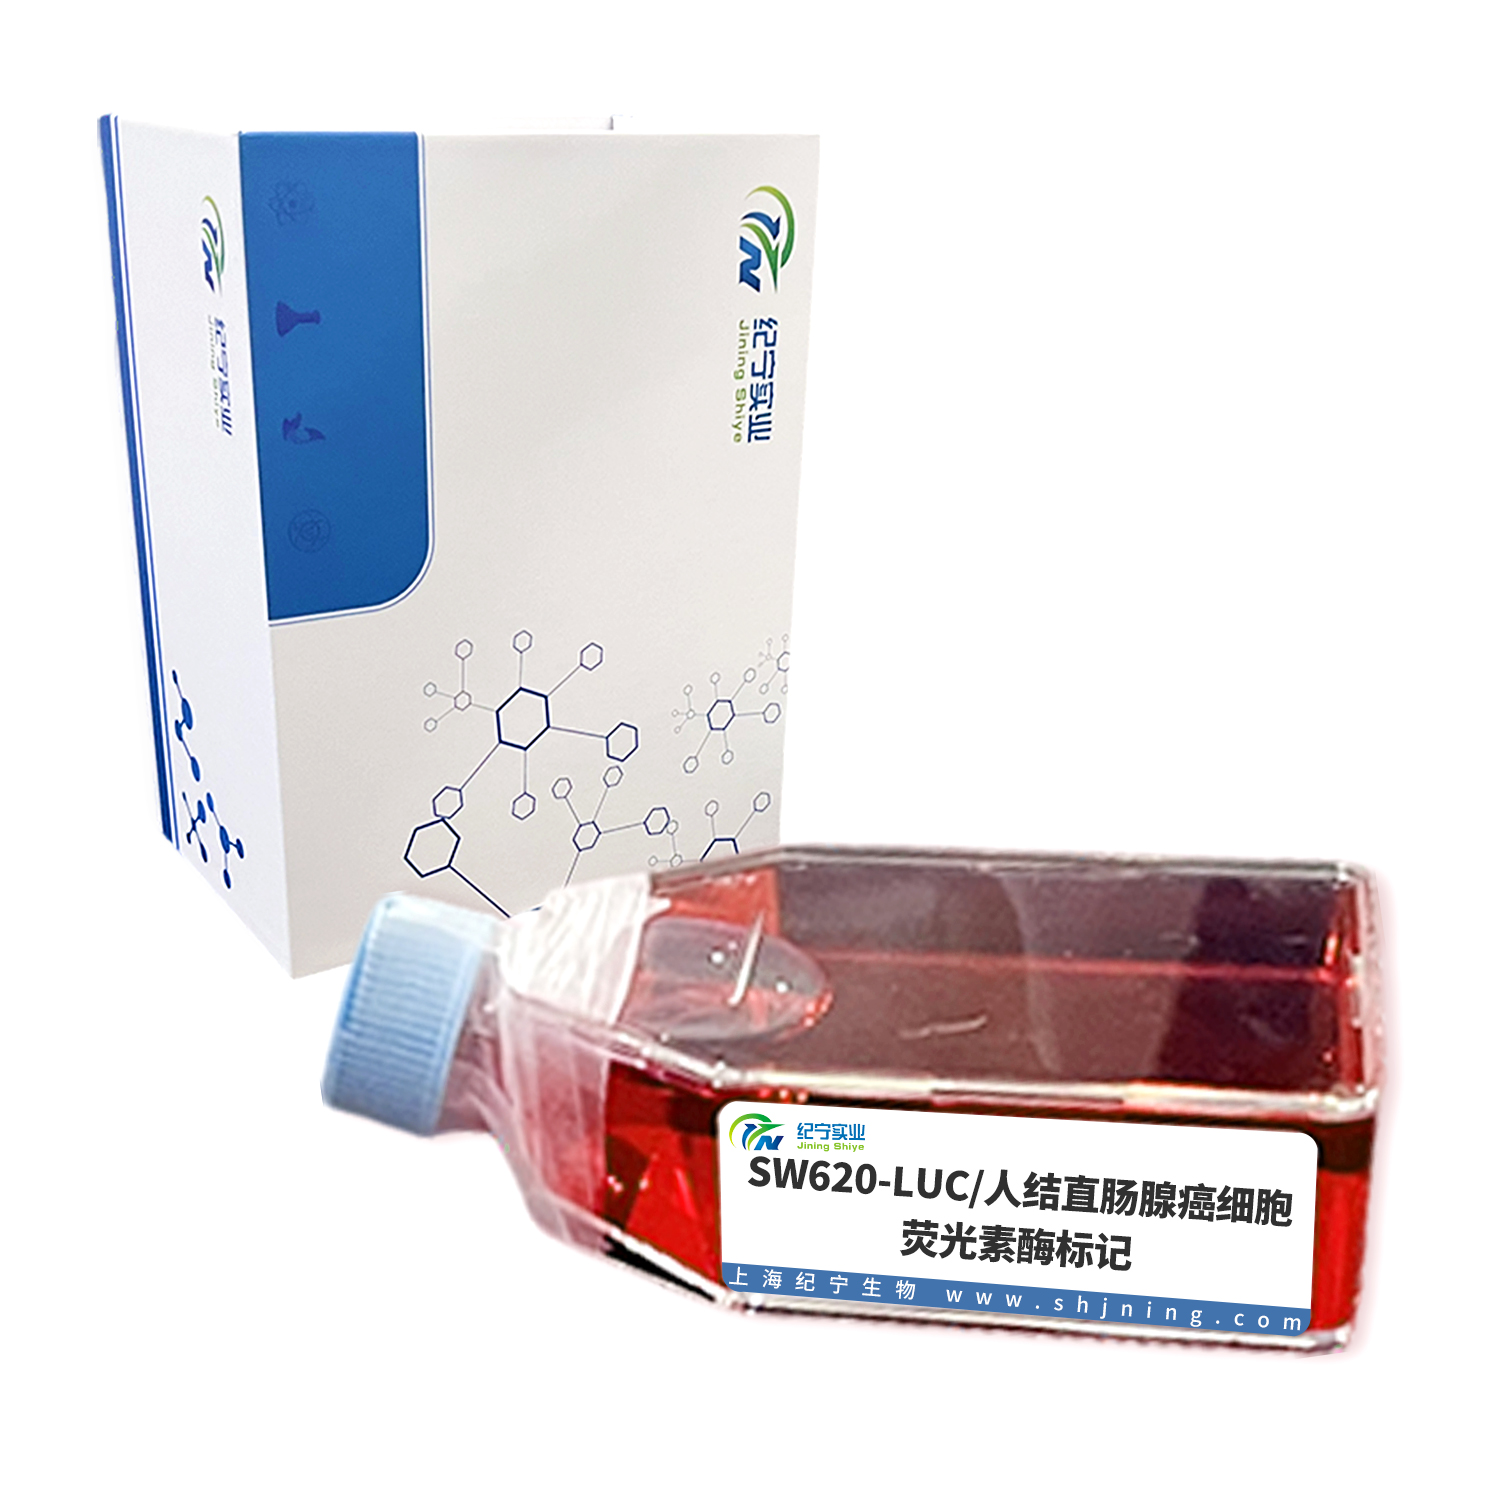 SW620-LUC/人结直肠腺癌细胞-荧光素酶标记